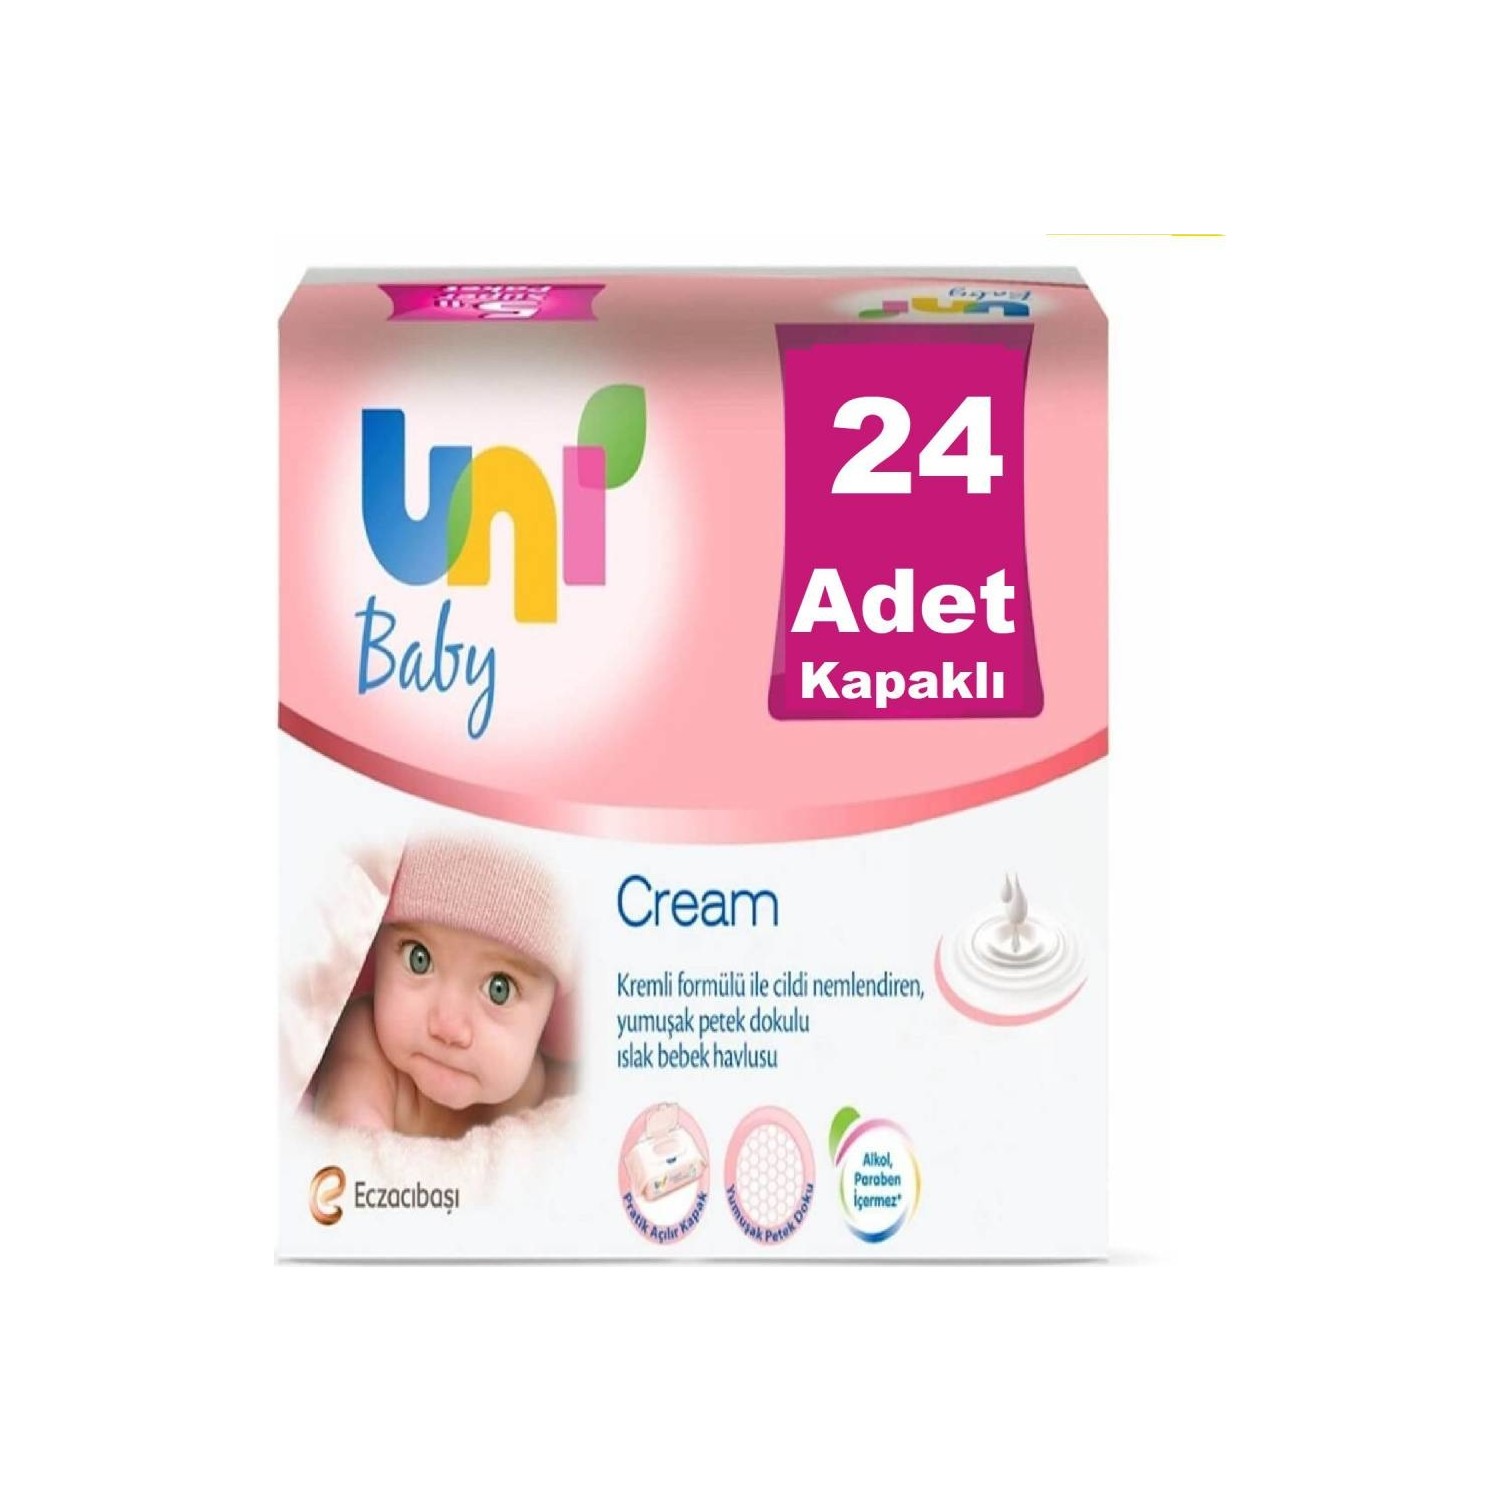 Uni Baby Cream Islak Bebek Havlusu 24'Lü Paket 1344'Lü